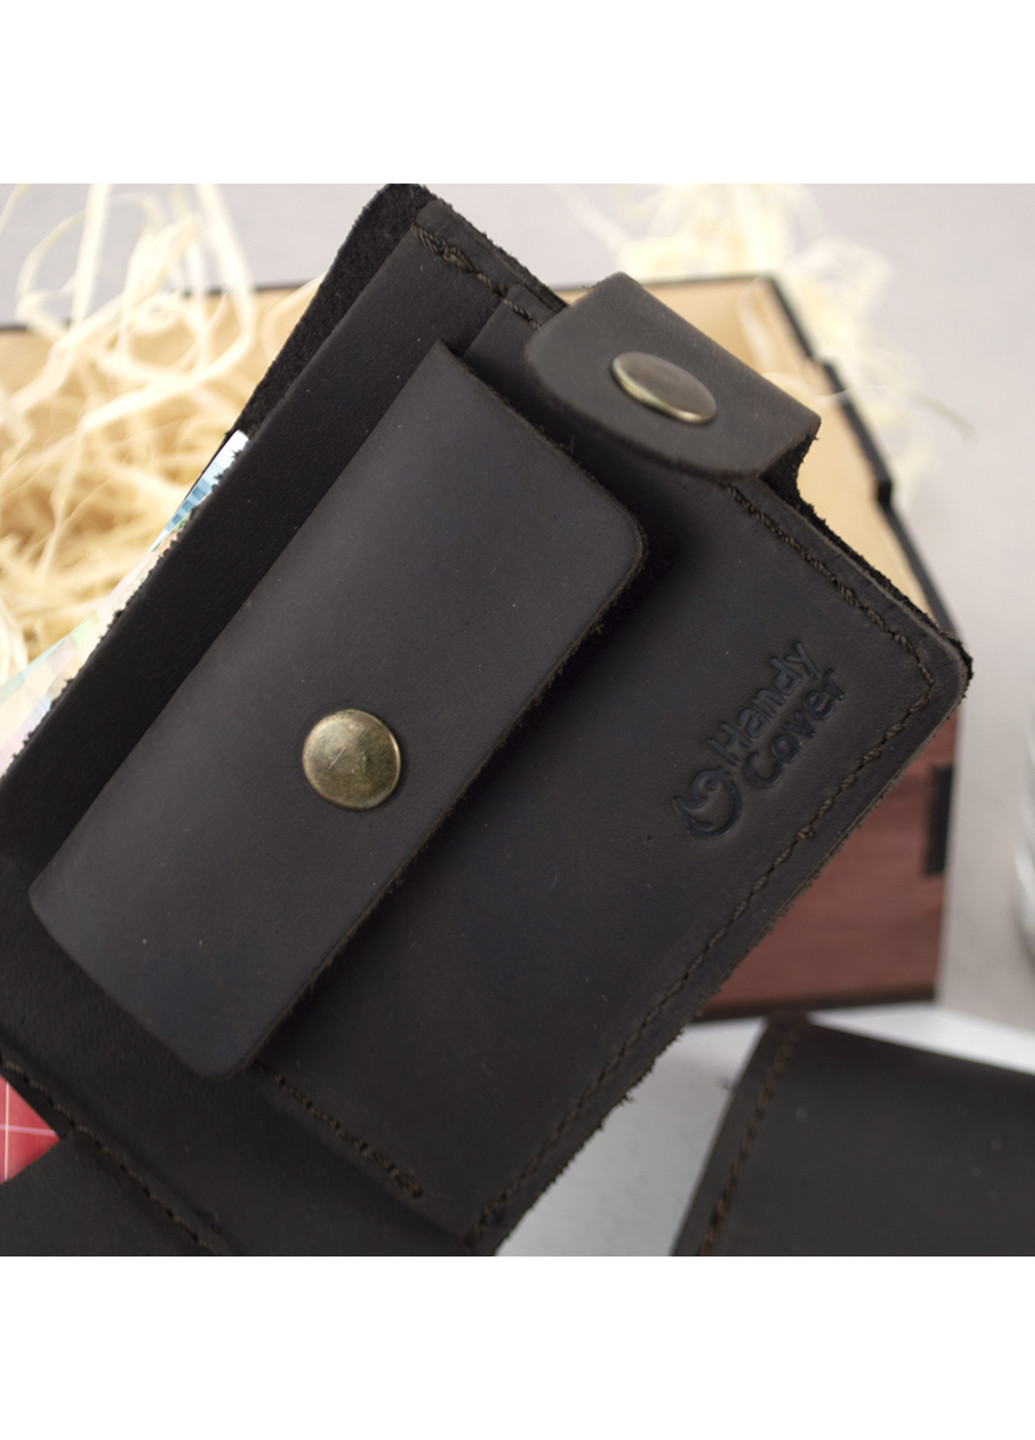 Мужской подарочный набор №47 коричневый (кошелек и обложка на паспорт) в коробке HandyCover (227842484)